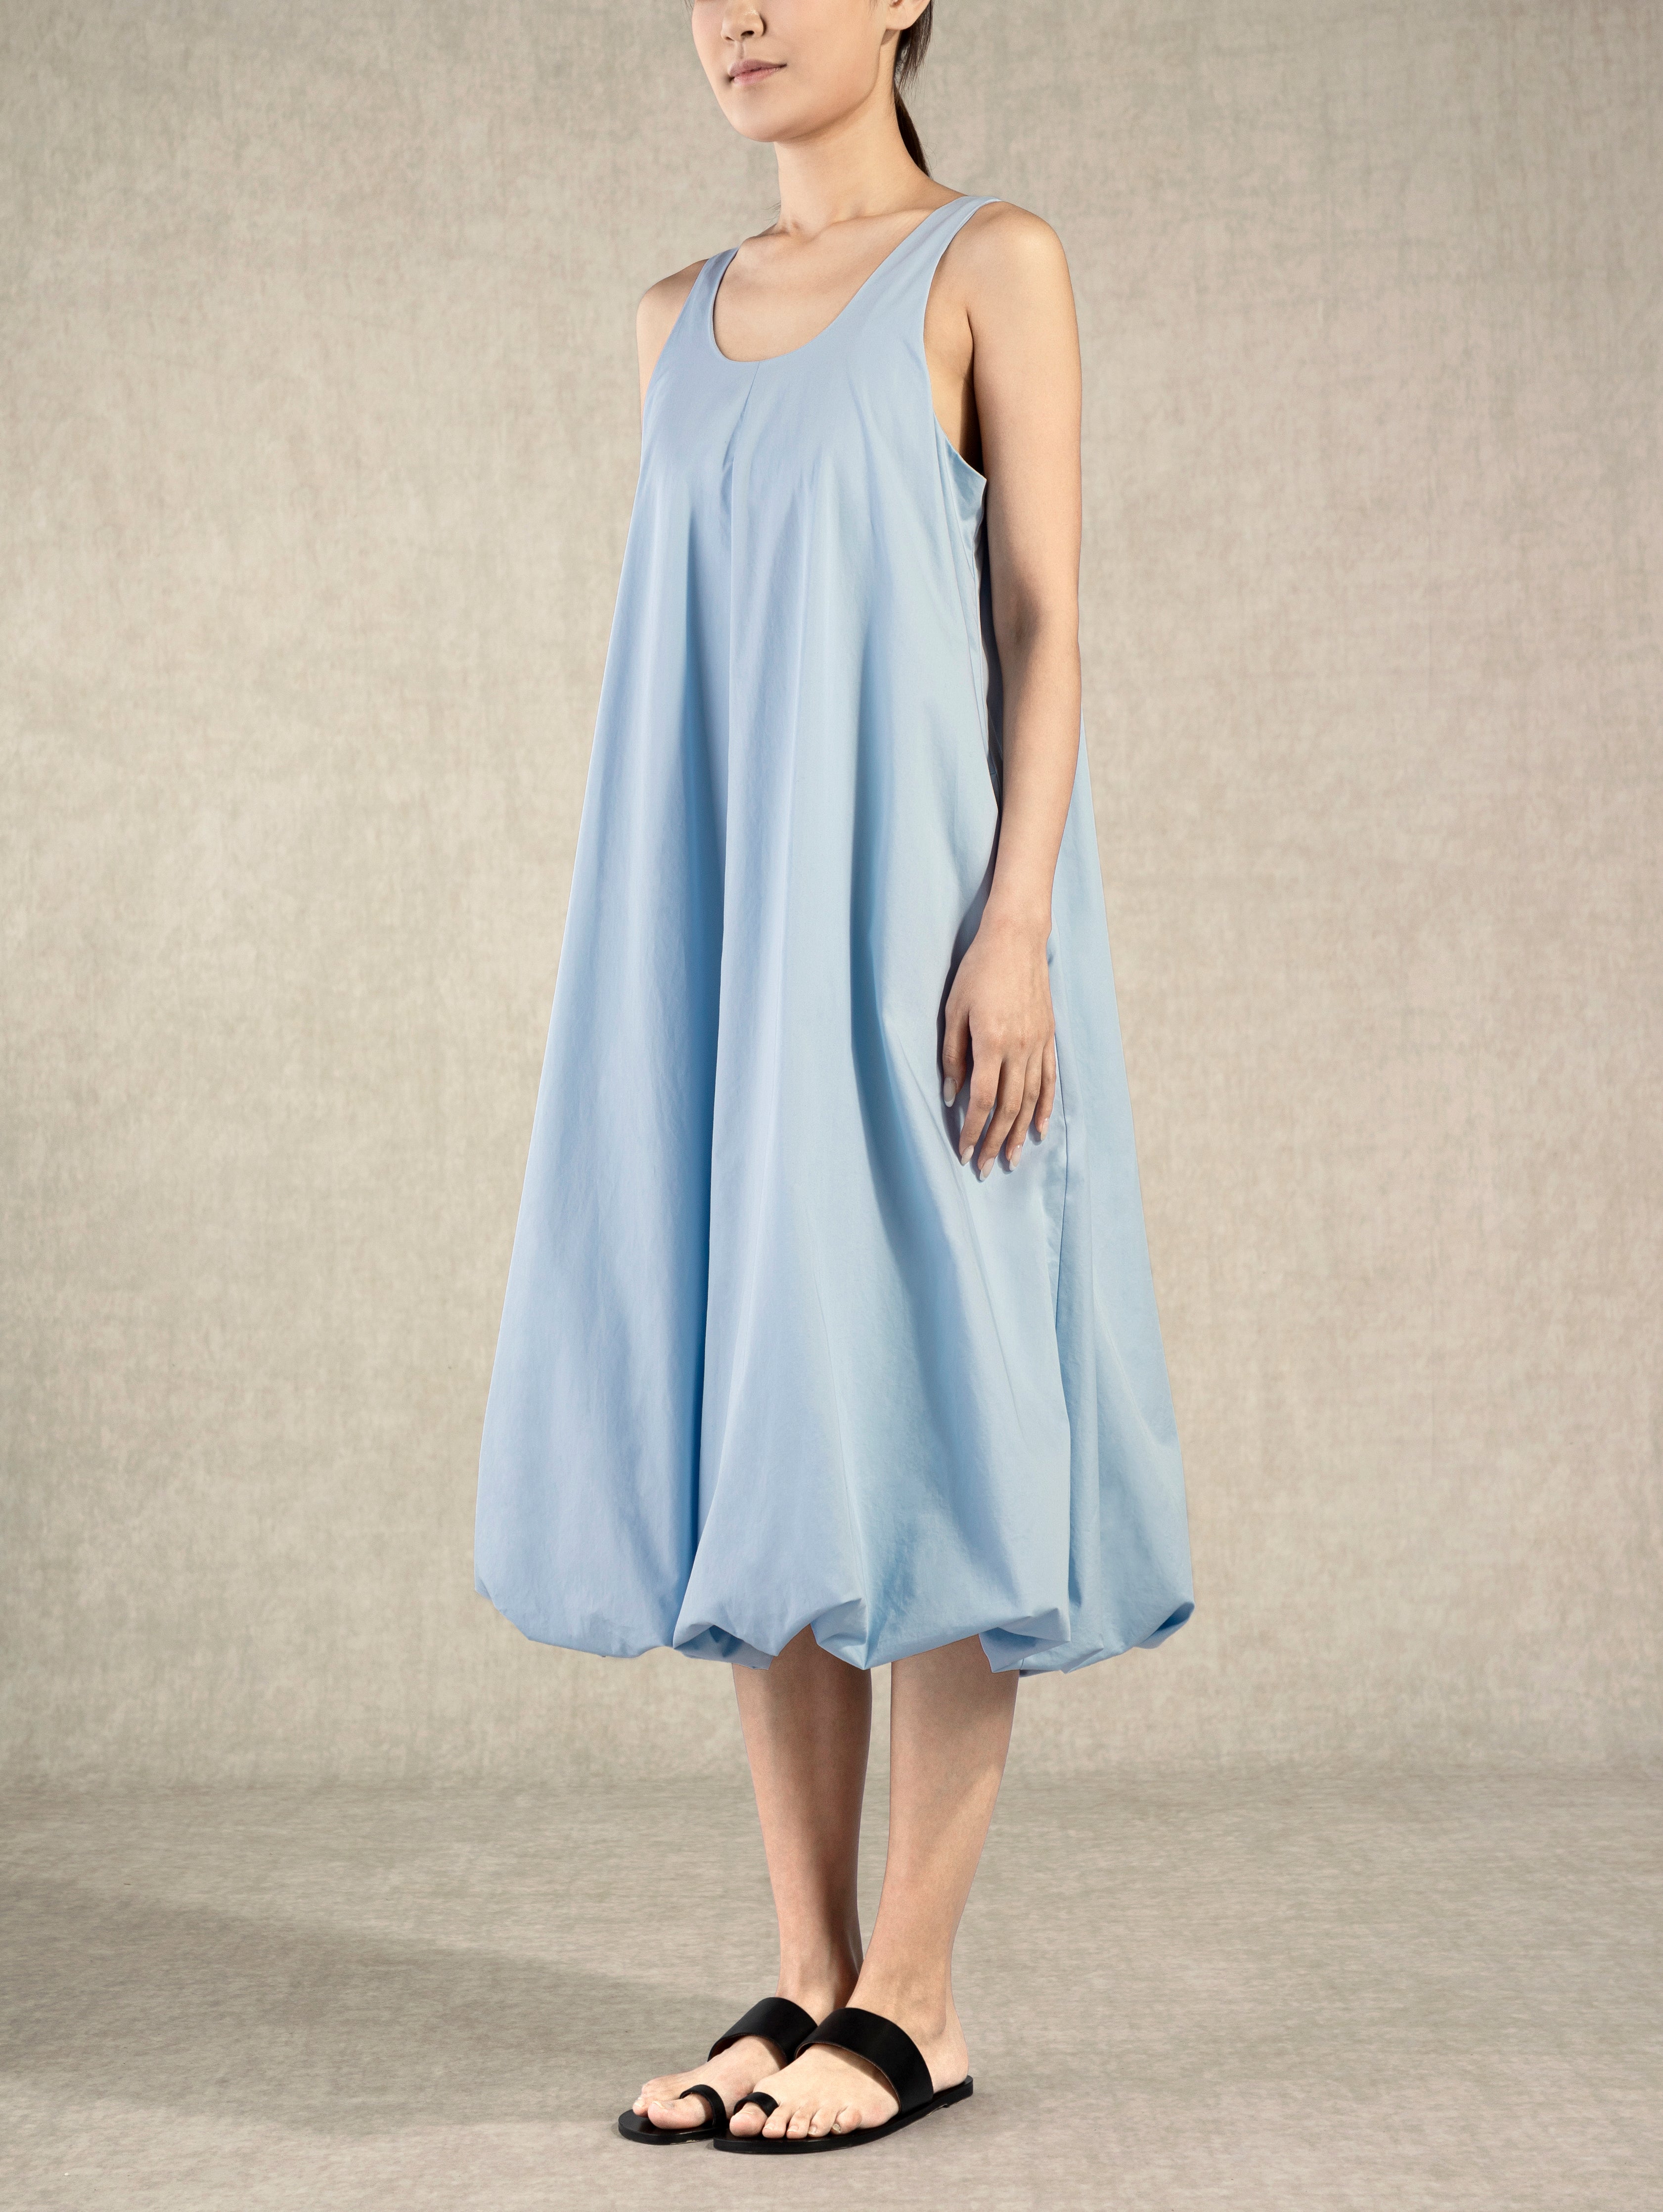 Light Blue Balloon Dress Womens Future Classics Summer Pocketed Dress